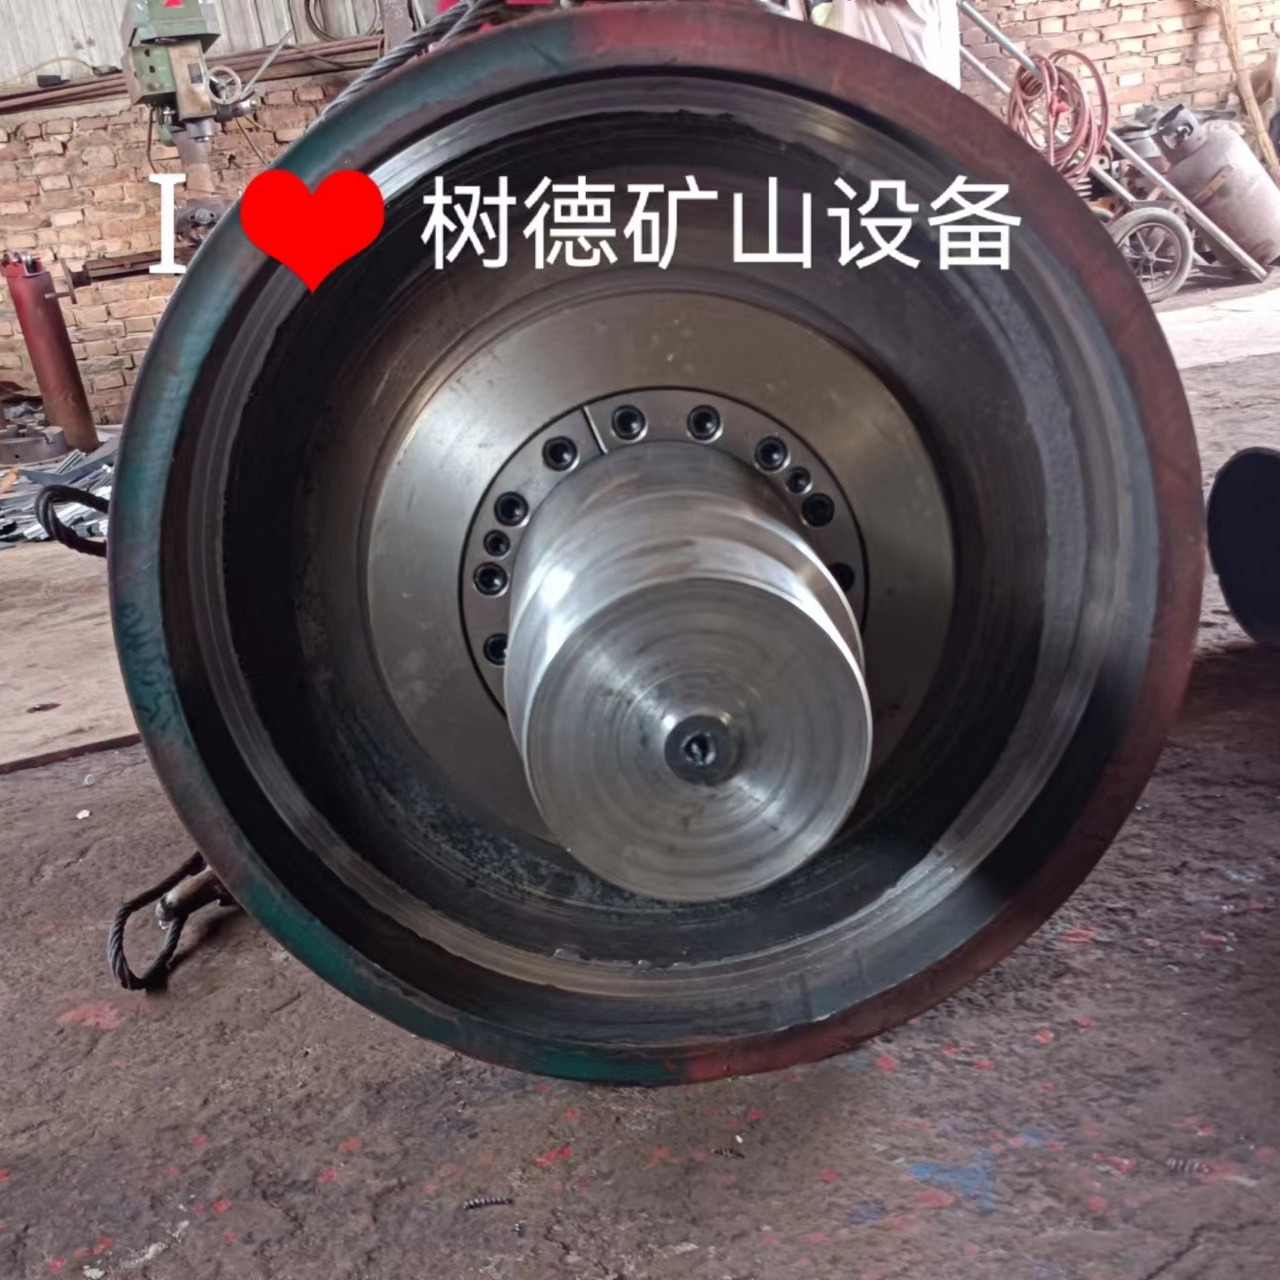 山东济宁树德厂家可定制铸胶改向辊筒 主动滚筒 被动滚筒 螺旋排渣滚筒